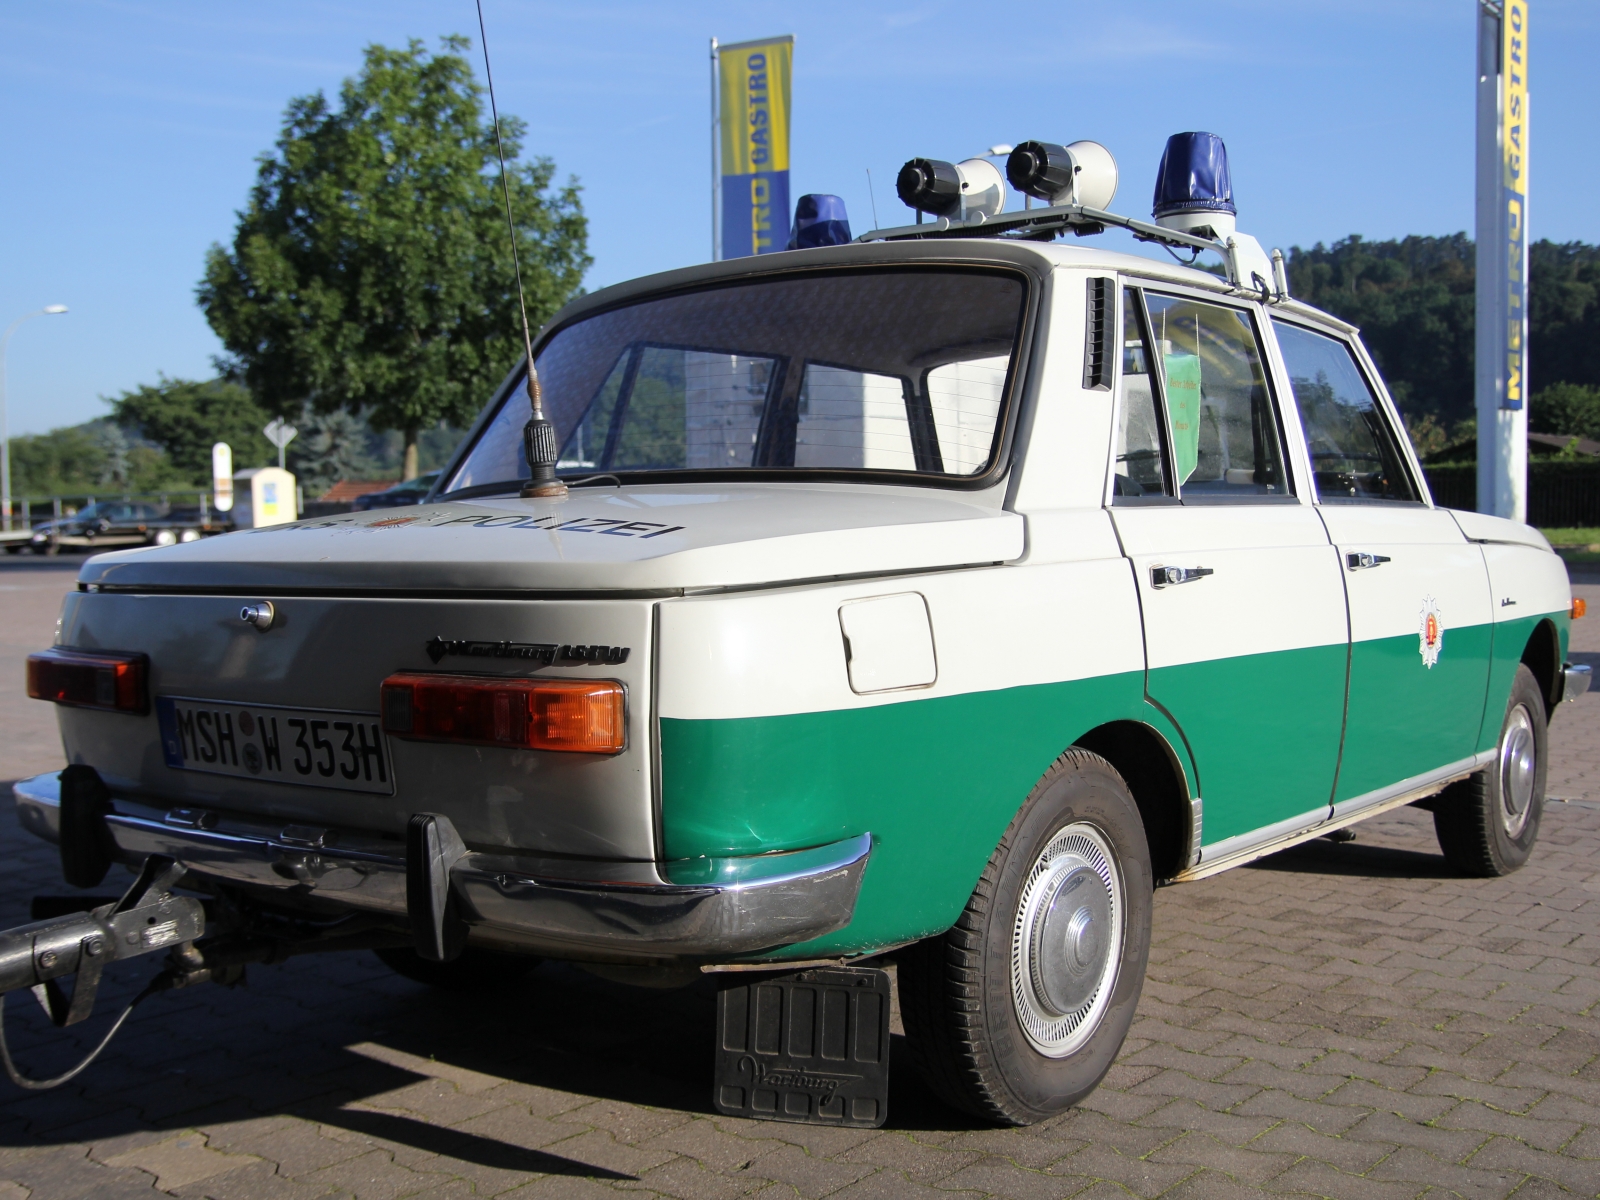 Wartburg 353 W Volkspolizei